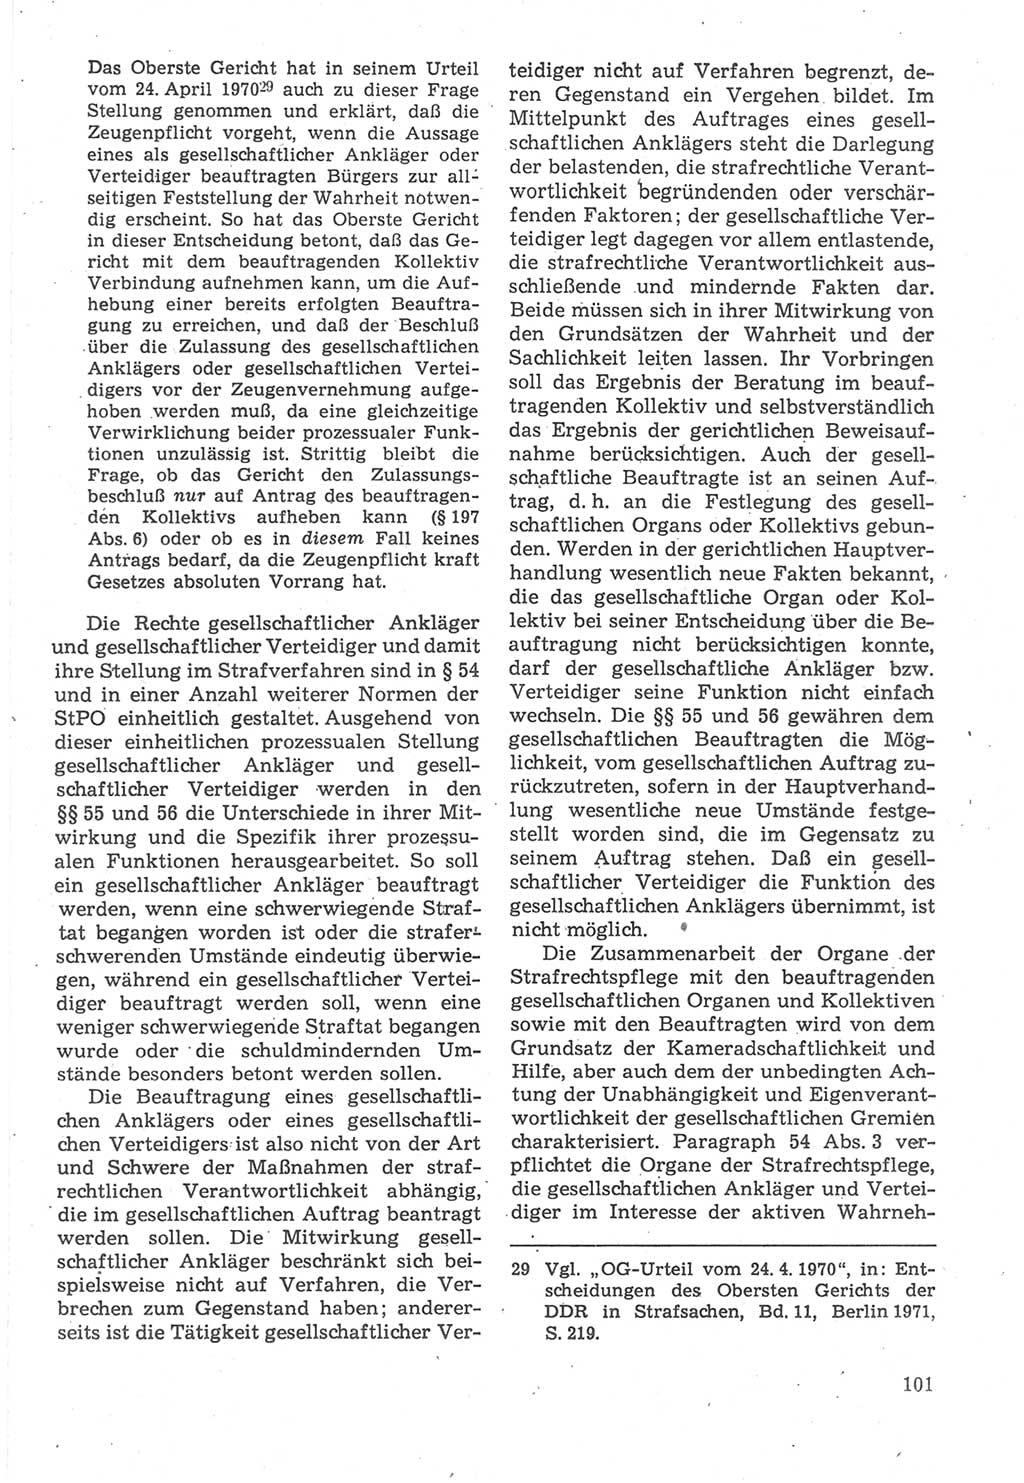 Strafverfahrensrecht [Deutsche Demokratische Republik (DDR)], Lehrbuch 1987, Seite 101 (Strafverf.-R. DDR Lb. 1987, S. 101)